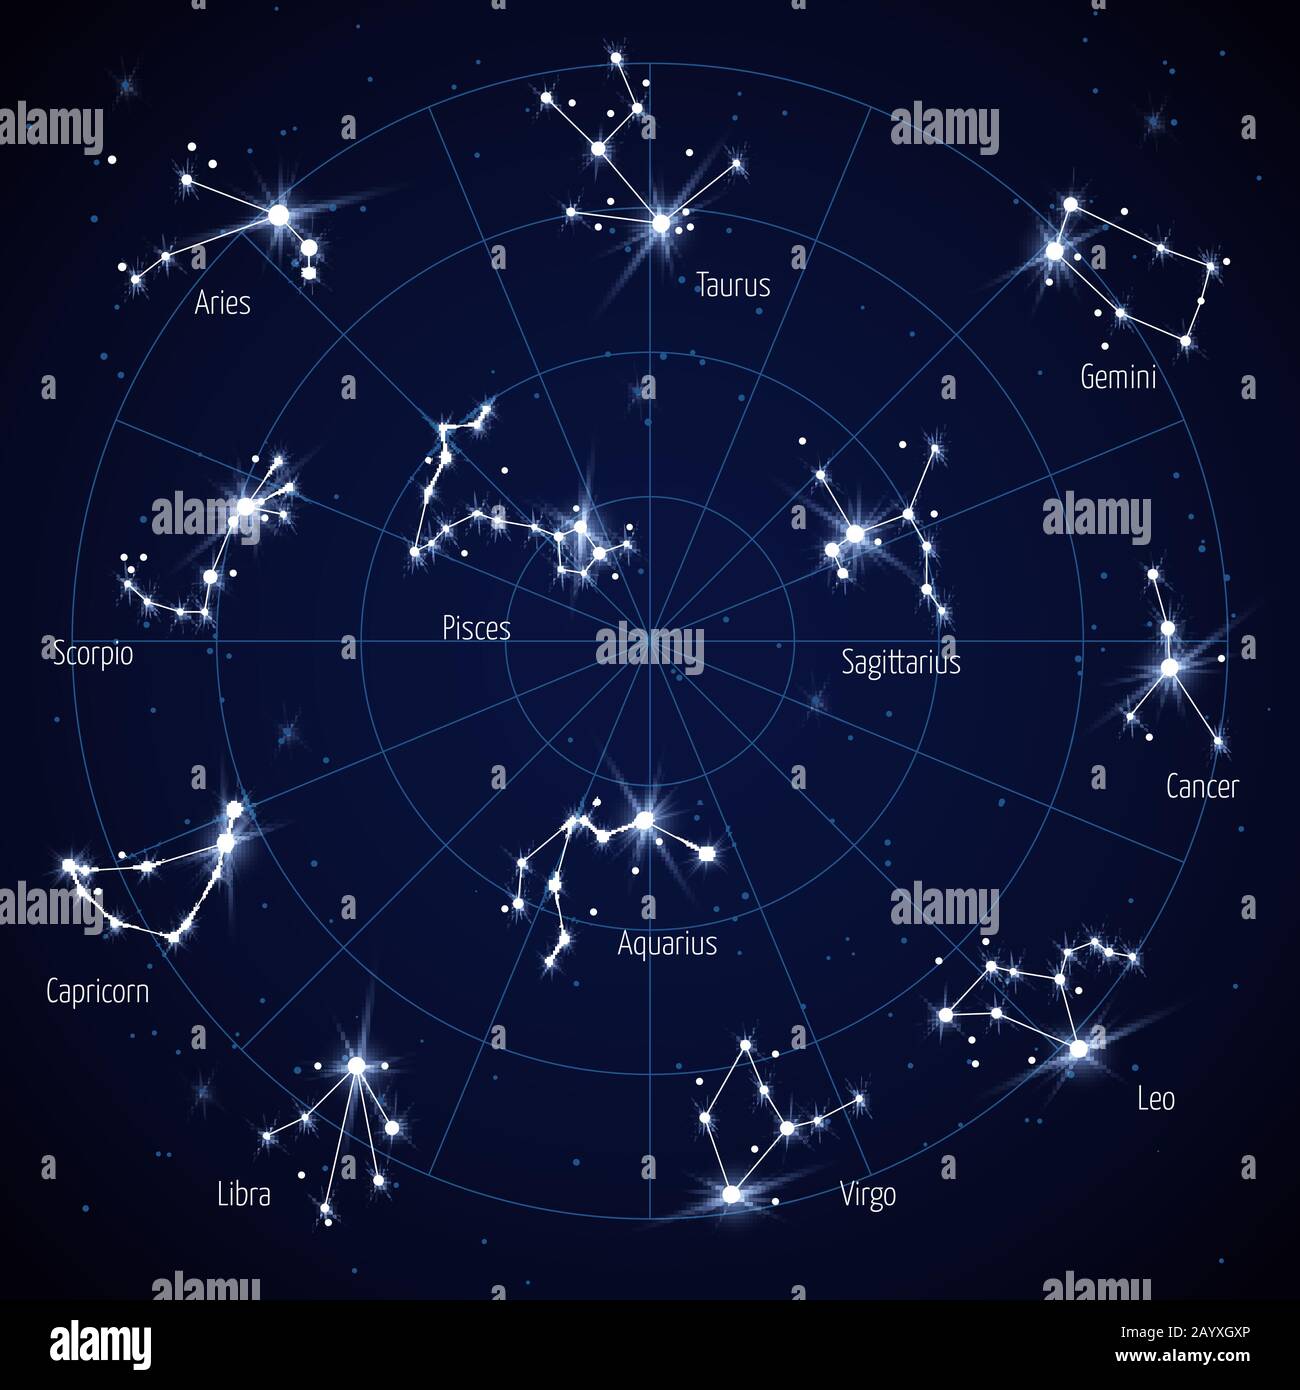 Vektorhimmel Sternkarte mit Sternbildern. Satz der Konstellation in der Raum-Nacht-Abbildung Stock Vektor